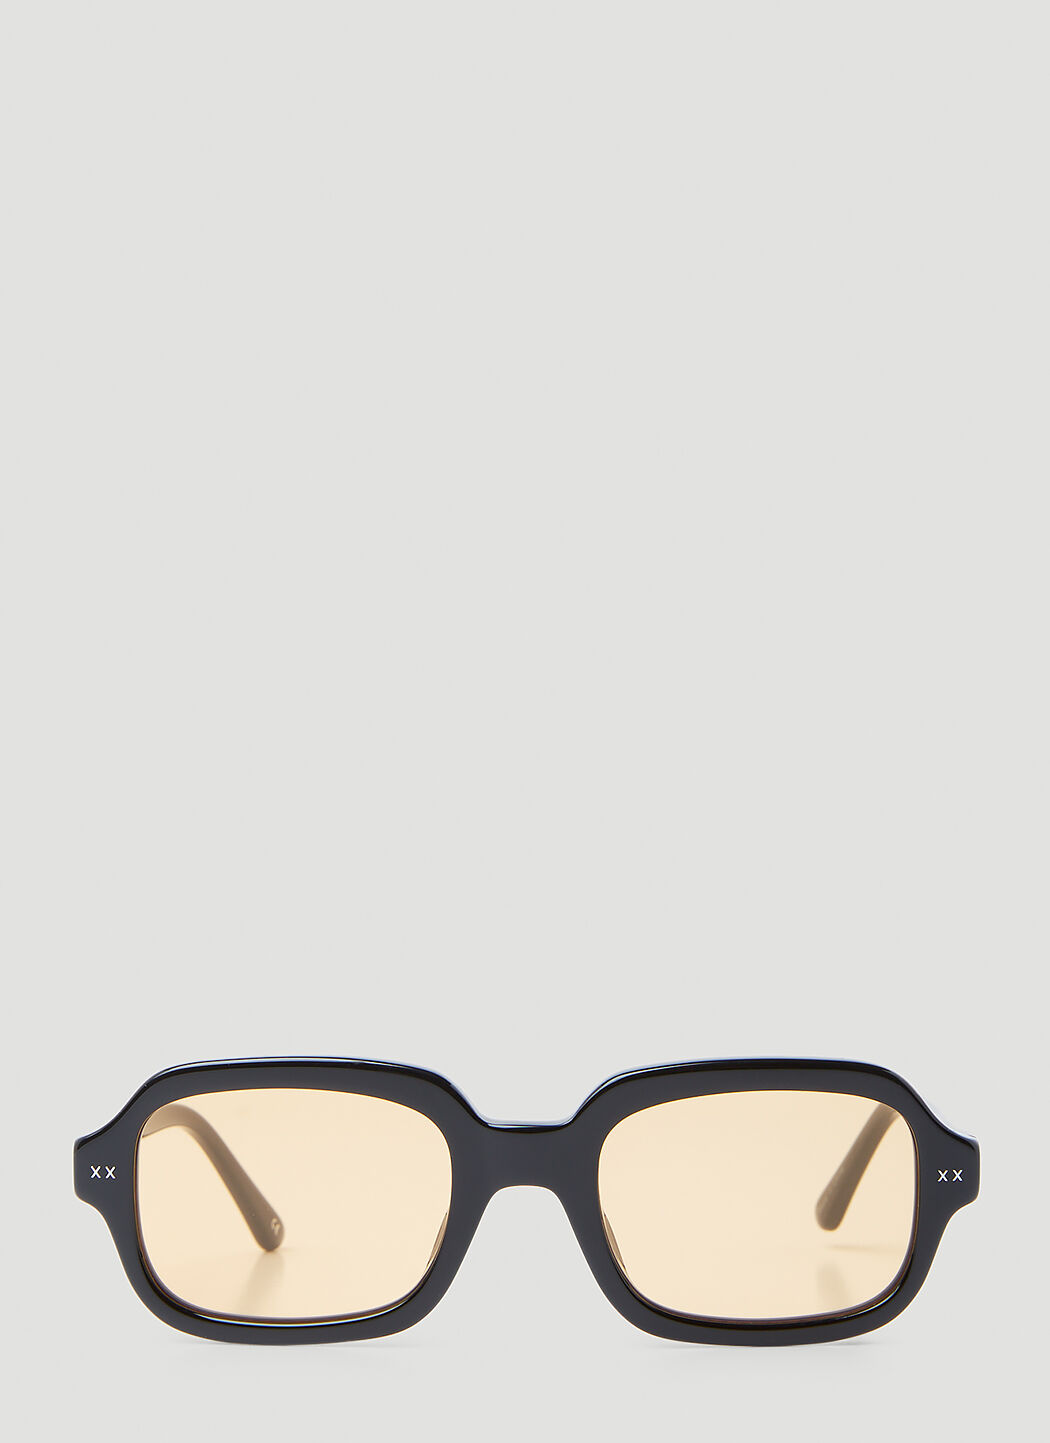 Lexxola Jordy Sunglasses Black lxx0353006